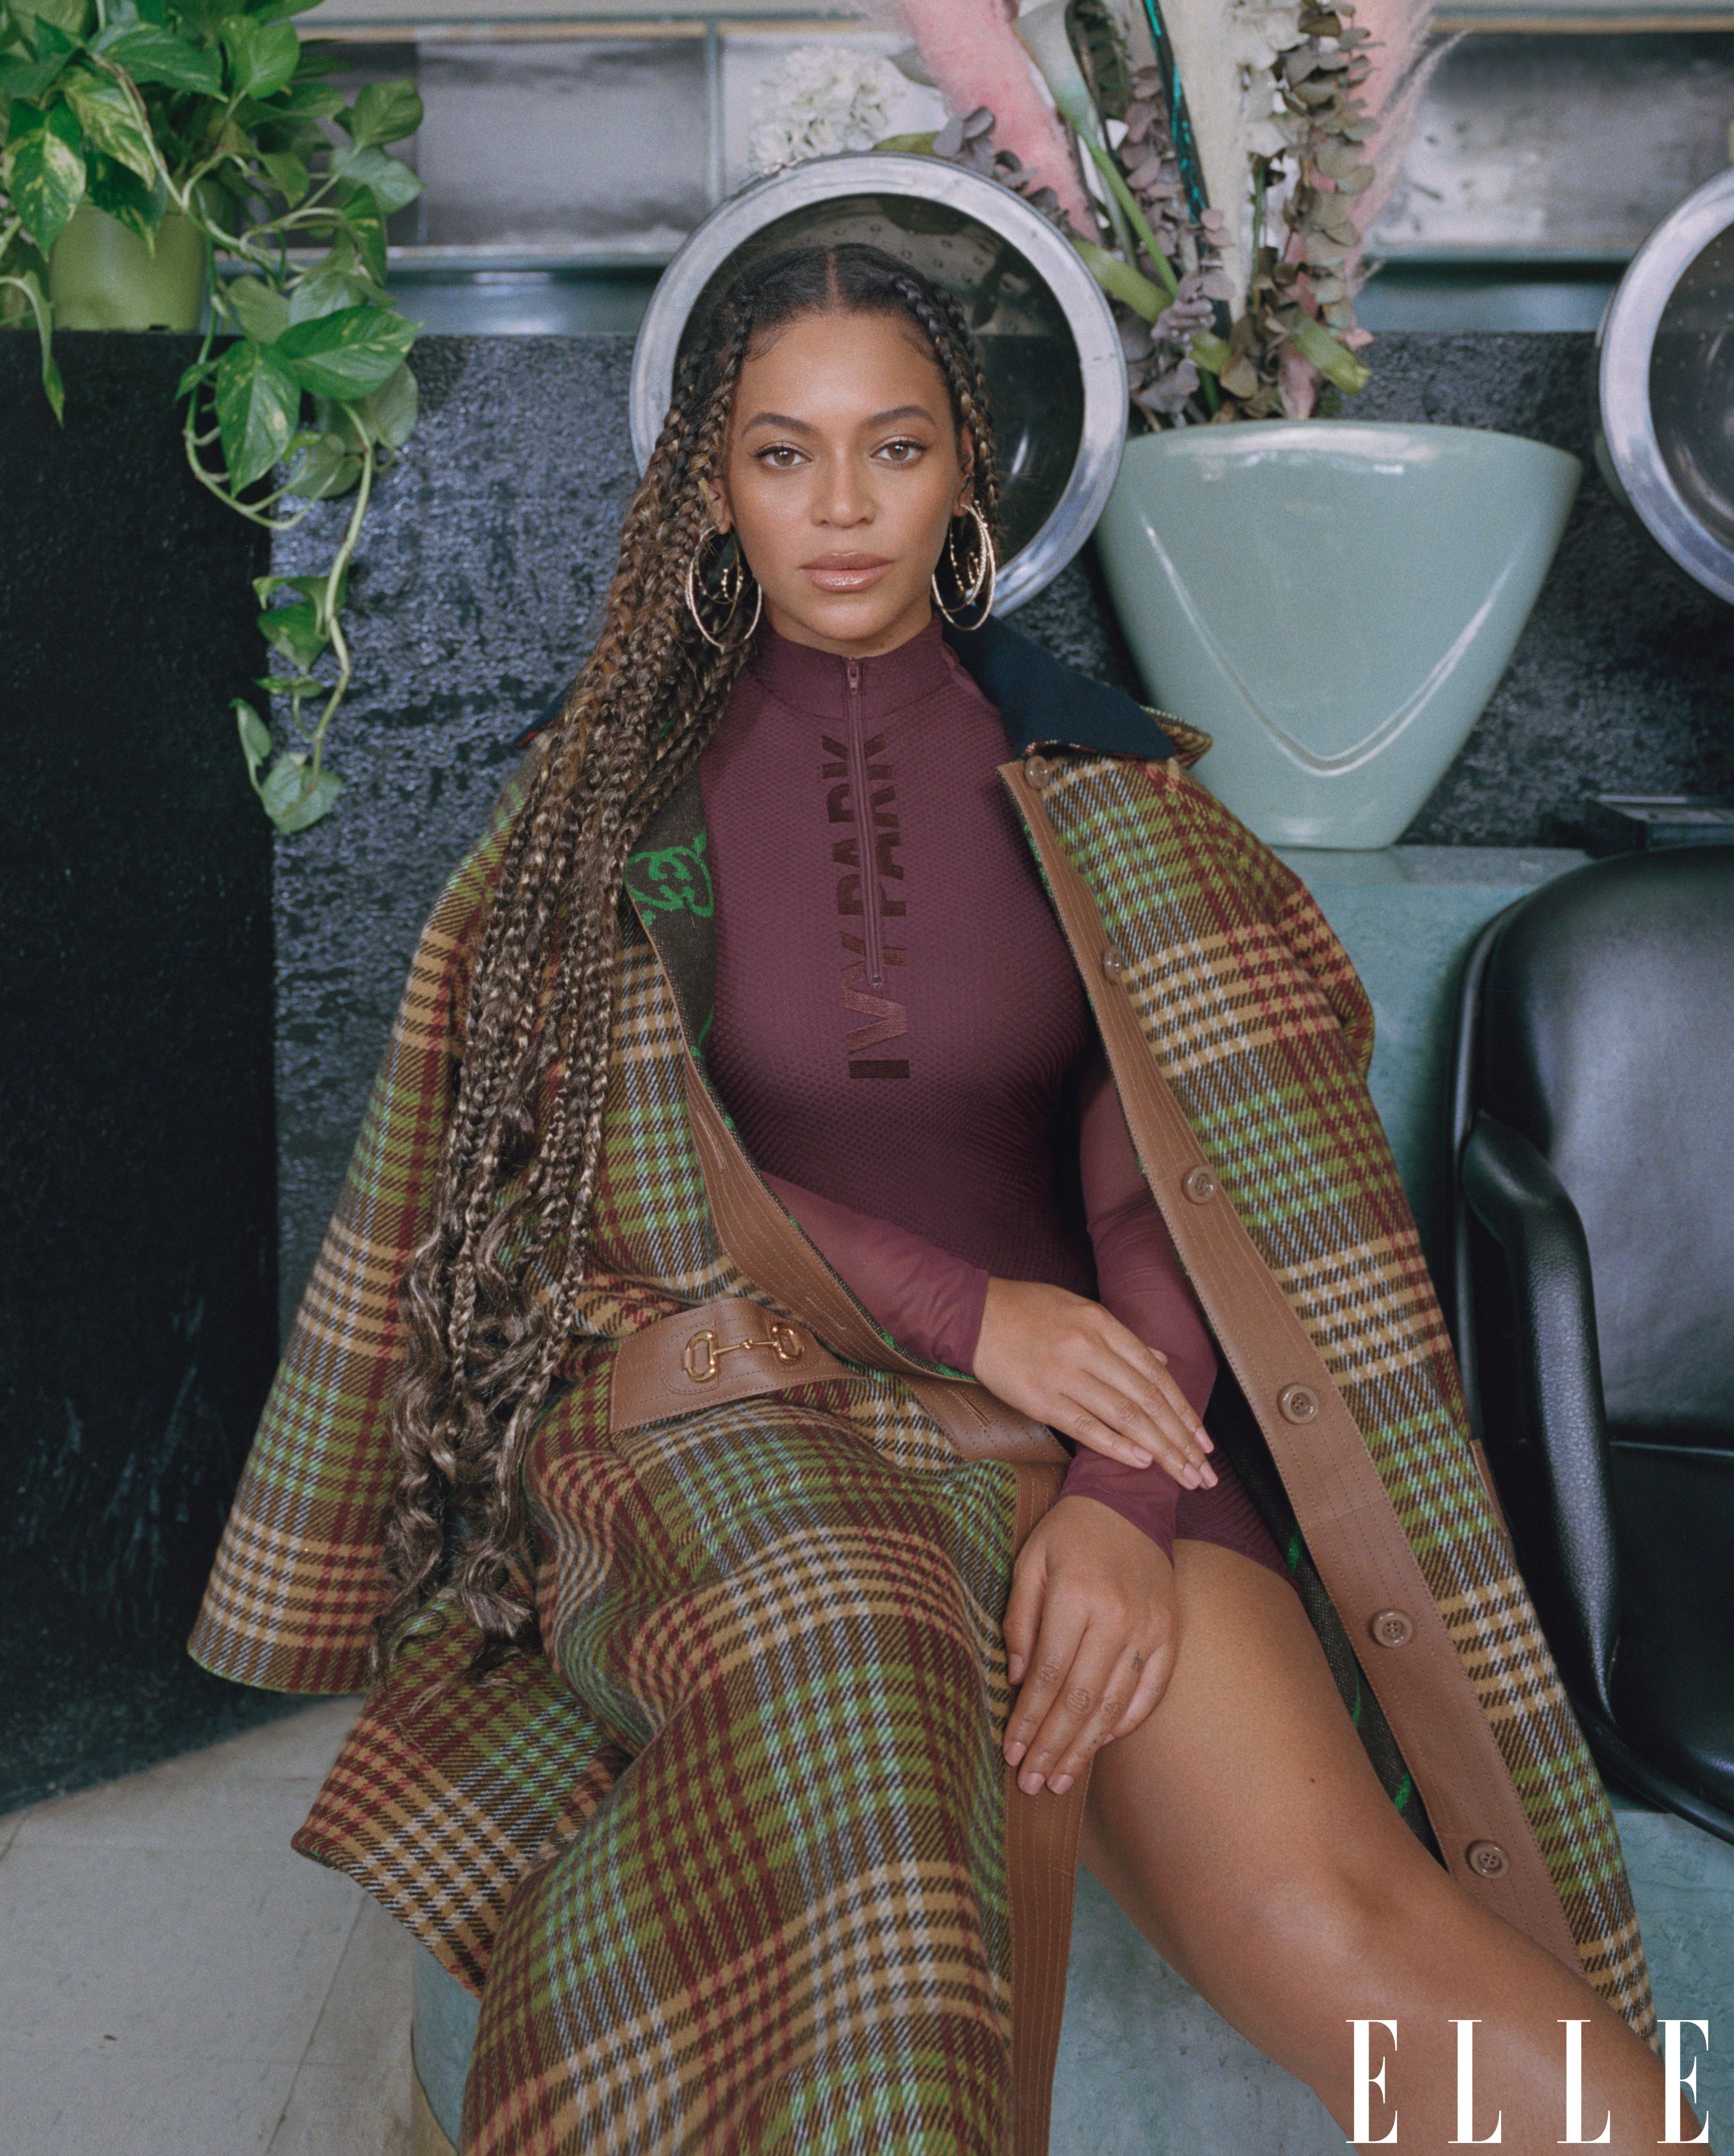 Beyoncé launches IVY PARK x adidas